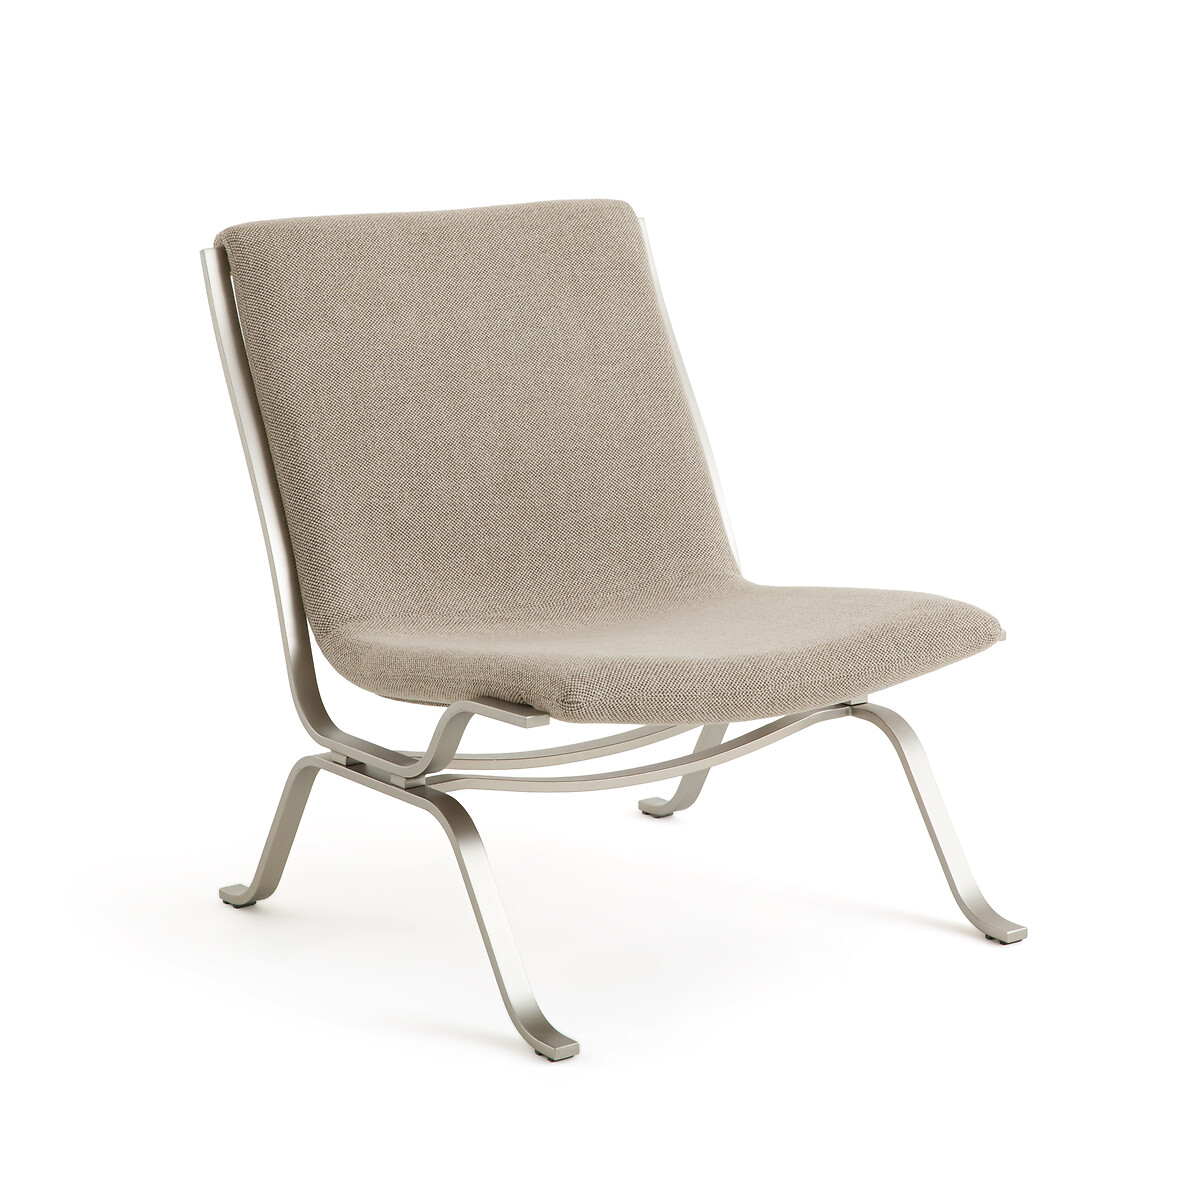 Кресло плетеное из ткани меланж и металла Pawel единый размер бежевый кресло шар из ротанга и металла nihove единый размер бежевый